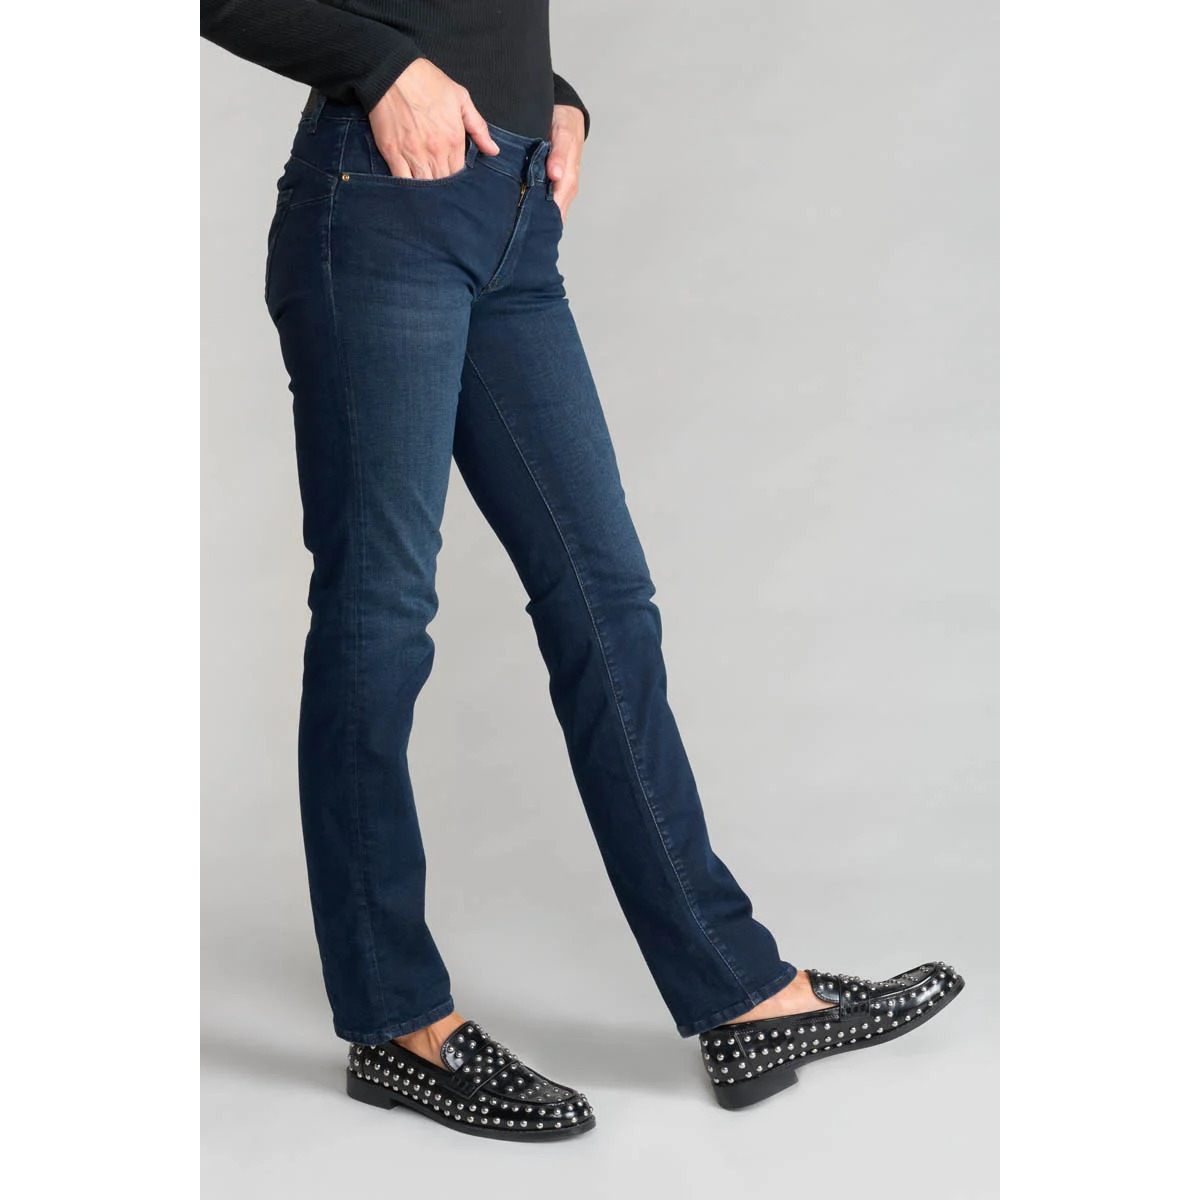 Le Temps des Cerises Bleu Tiko pulp regular 7/8ème jeans bleu noir TfP9Hoht